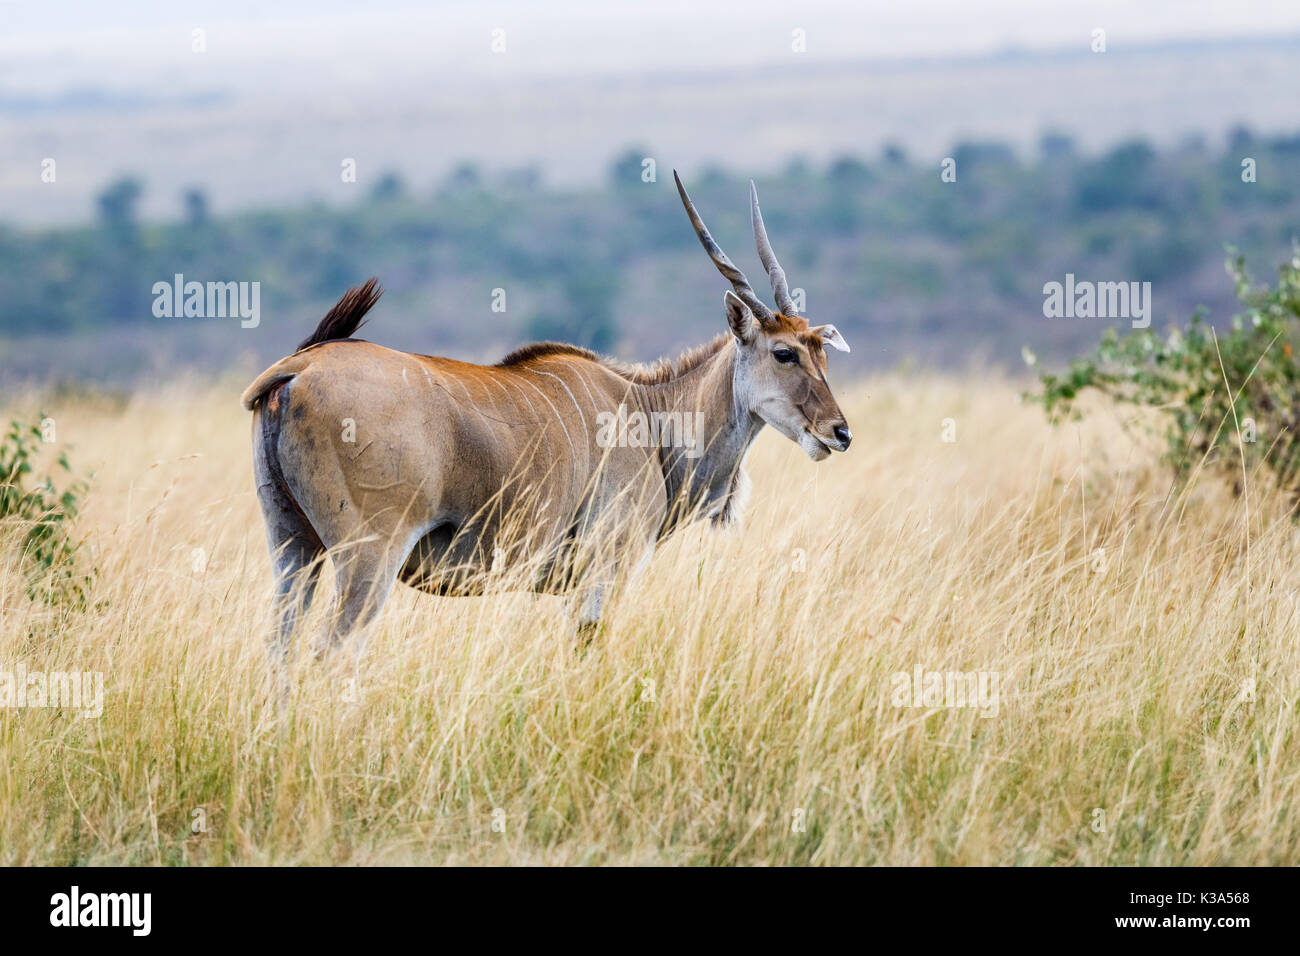 Blick auf gemeinsame eland Antilopen, taurotragus Oryx, mit großen spiralförmigen Hörnern, Masai Mara, Kenia, in langen Gras in der Savanne Stockfoto